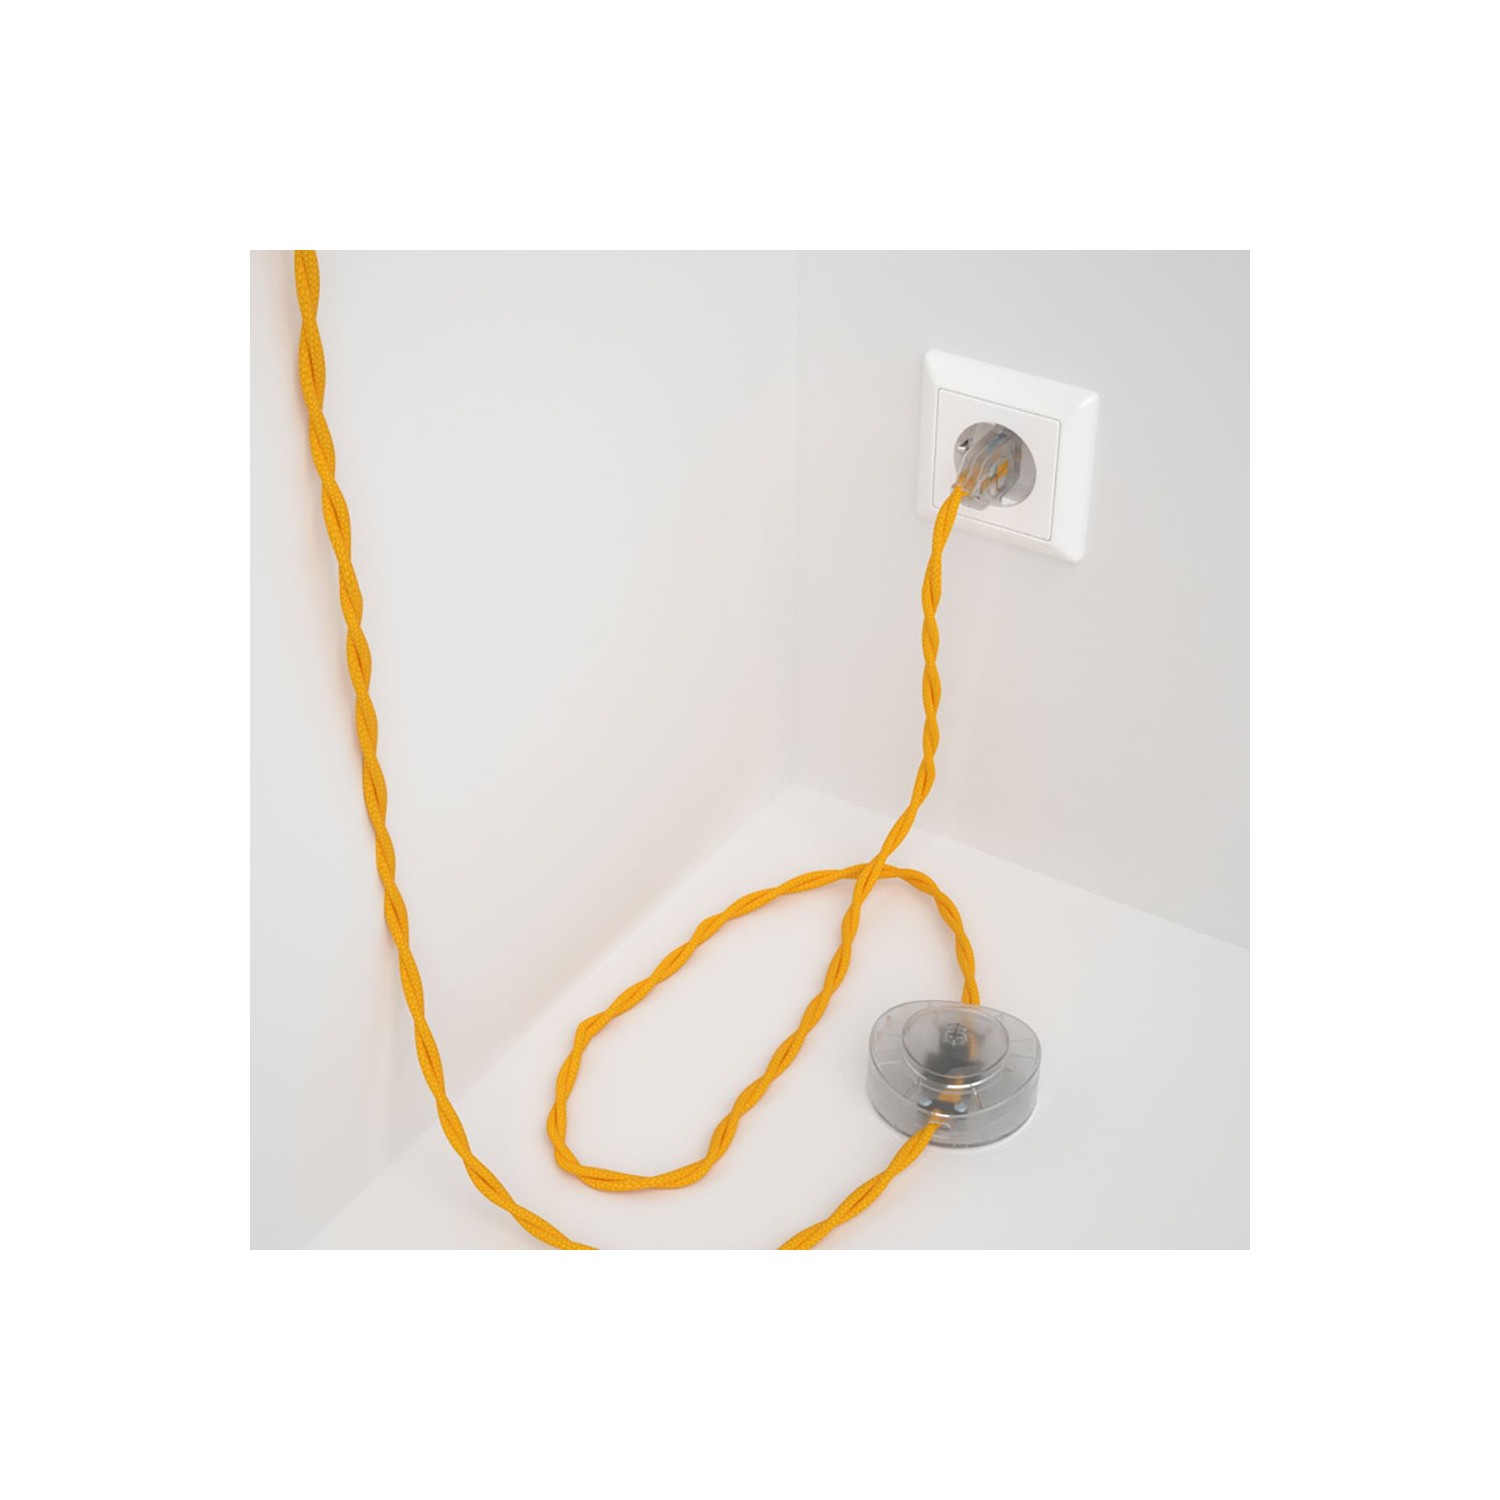 Strijkijzersnoer set TM10 geel viscose 3 m. voor staande lamp met stekker en voetschakelaar.